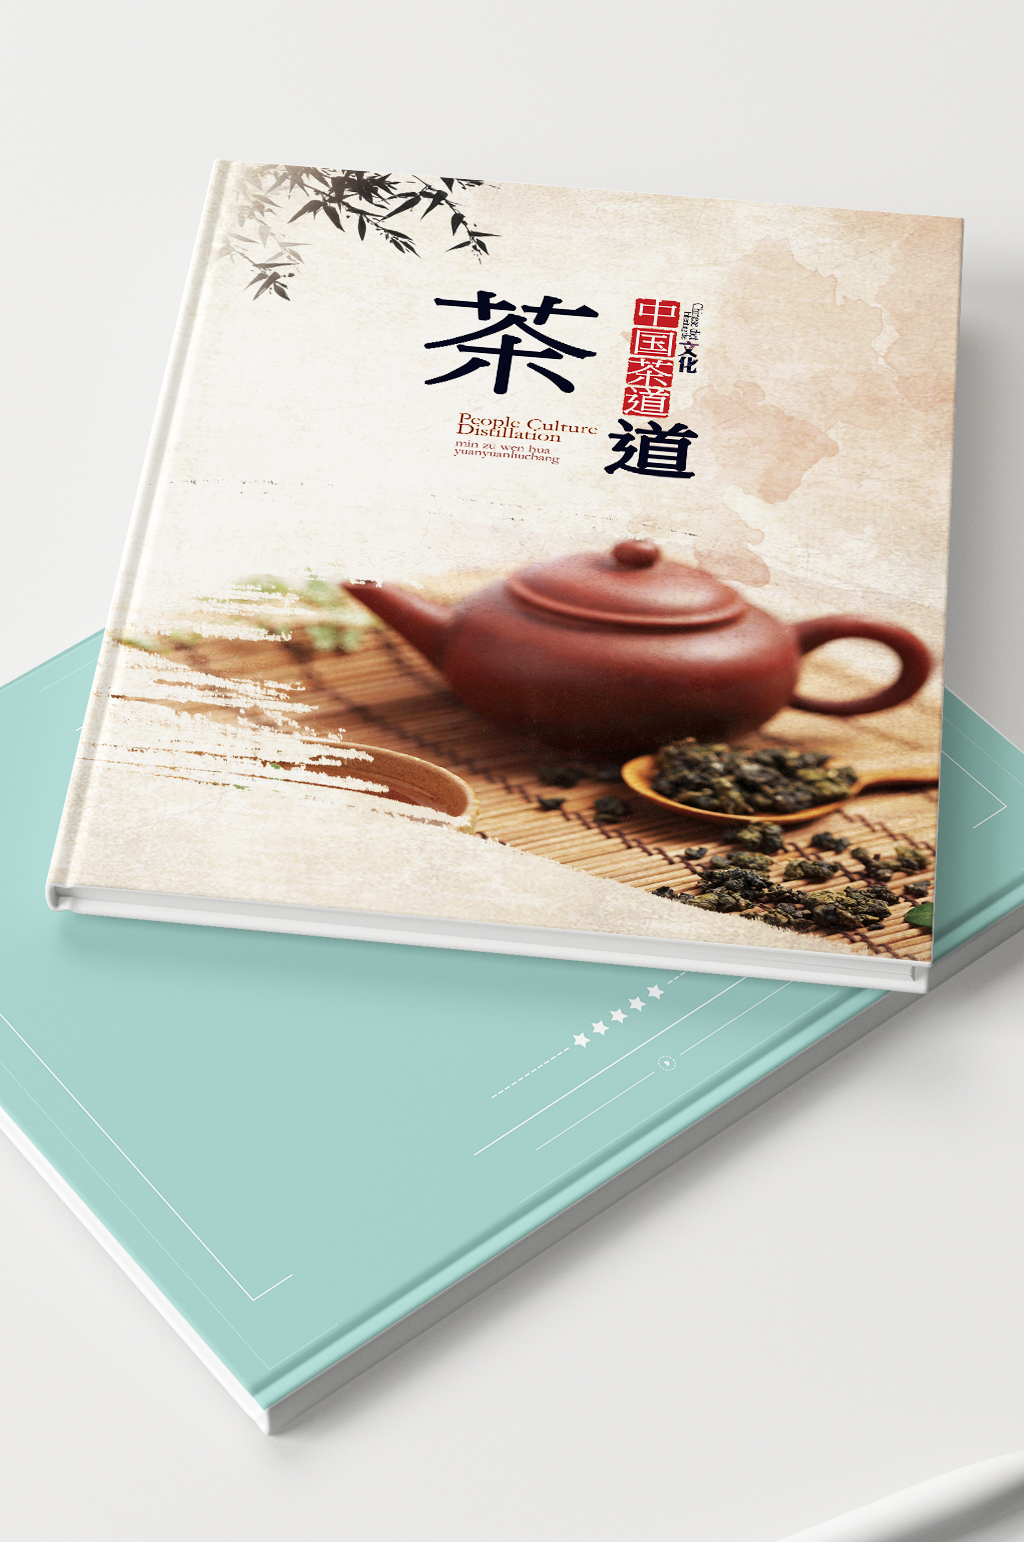 简约大气中国名茶画册封面立即下载中国名茶茶叶包装设计中国十大名茶